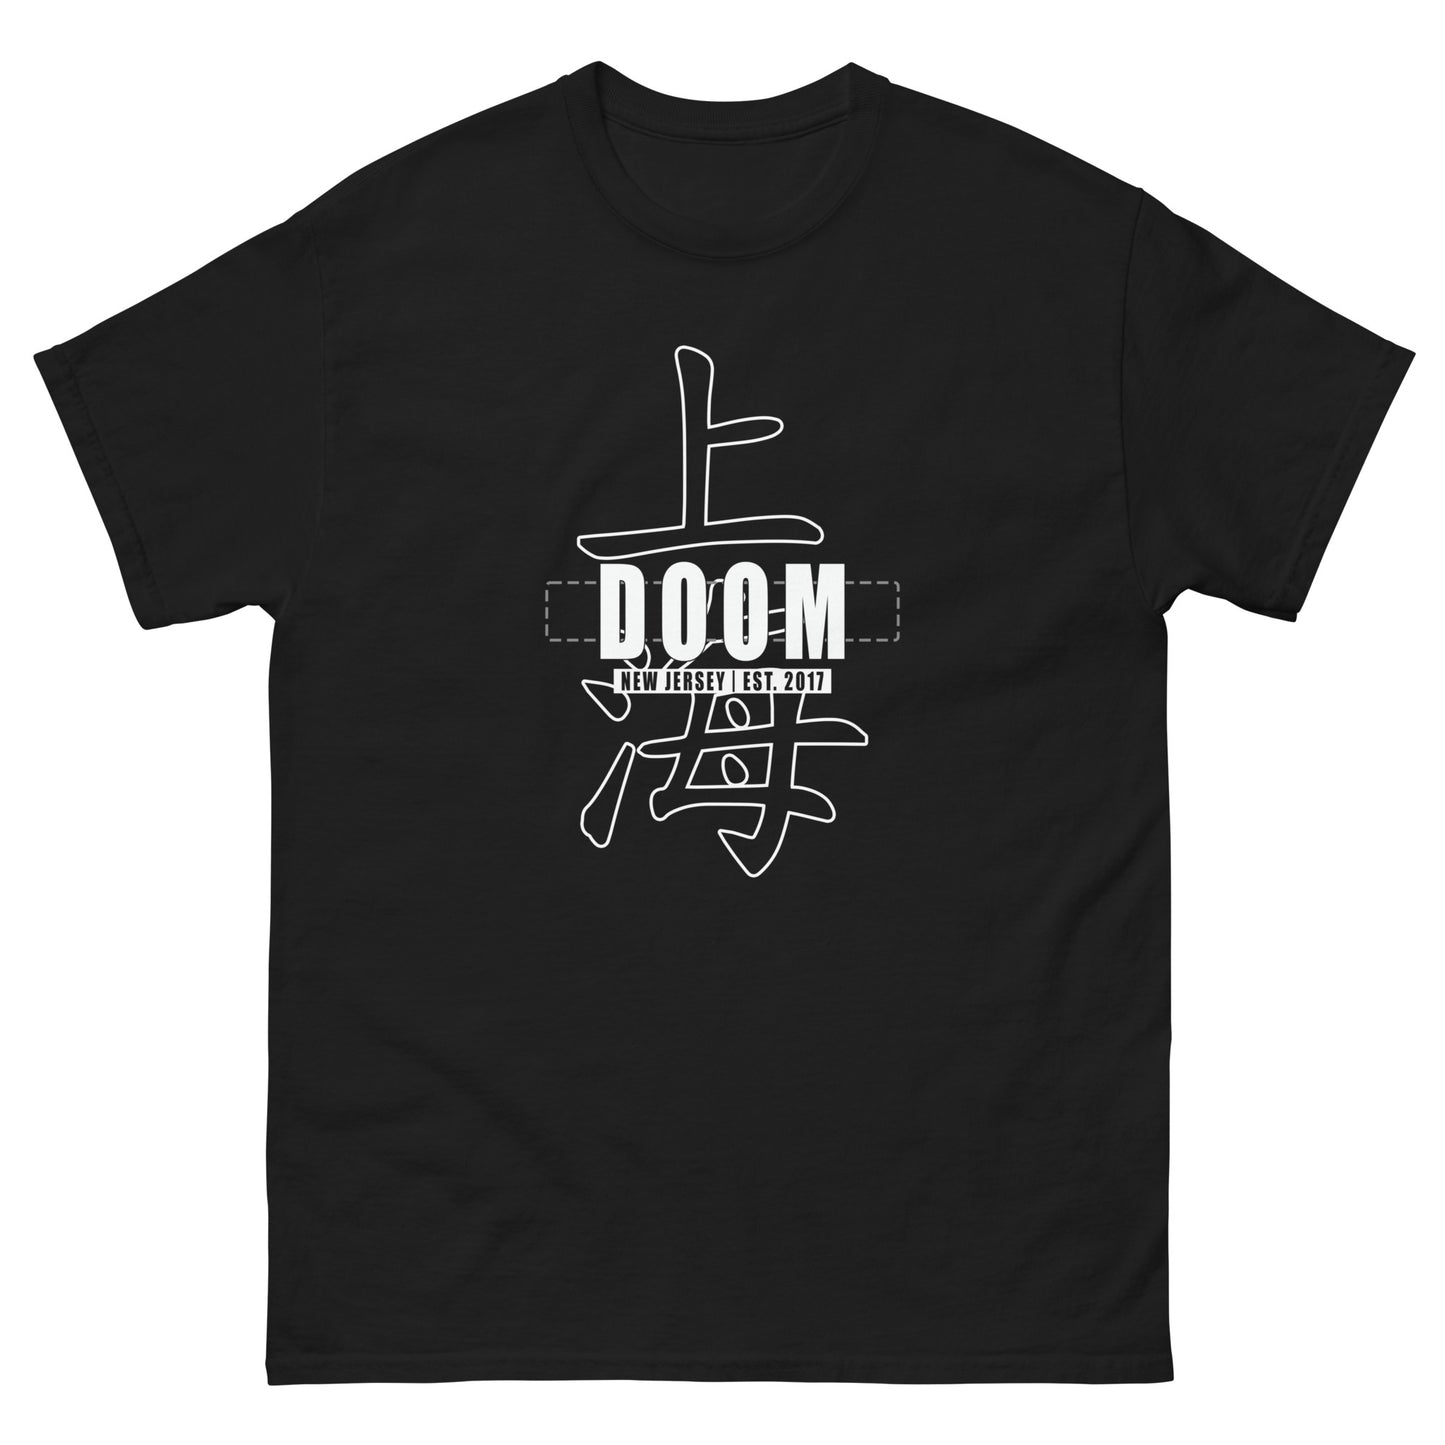 Shanghai Doom - Basic T-Shirt